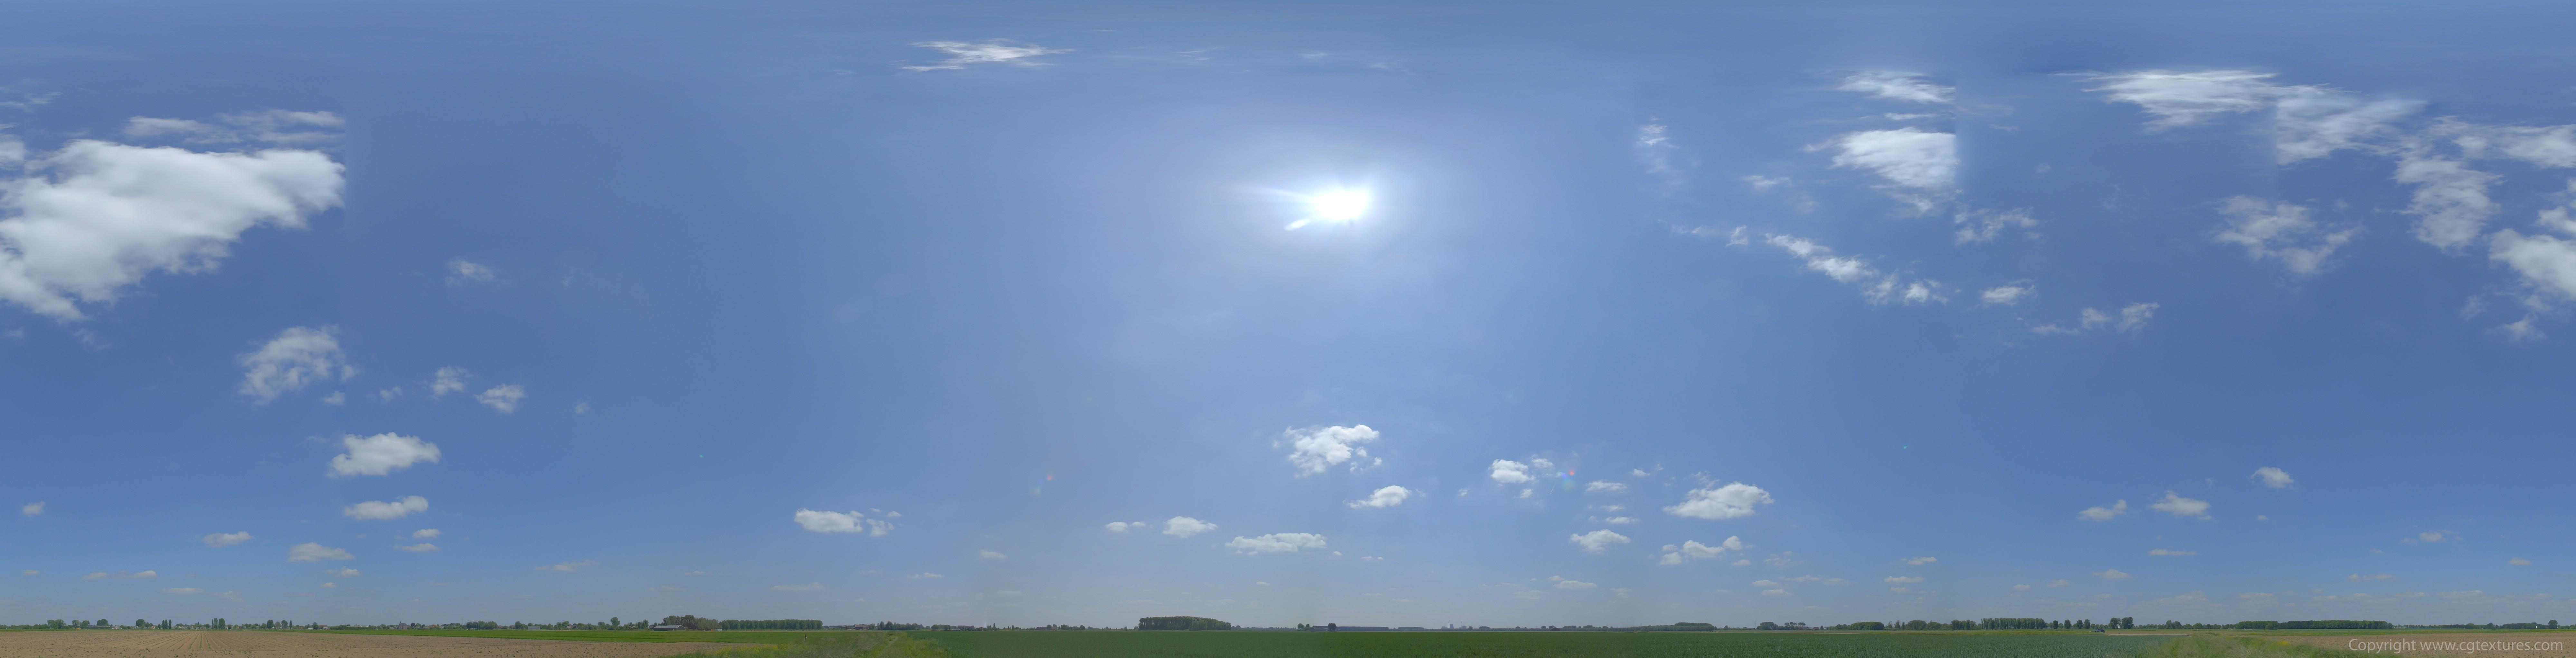 Погода голубое небо дневное время белые облака чистое небо Фон И картинка  для бесплатной загрузки - Pngtree